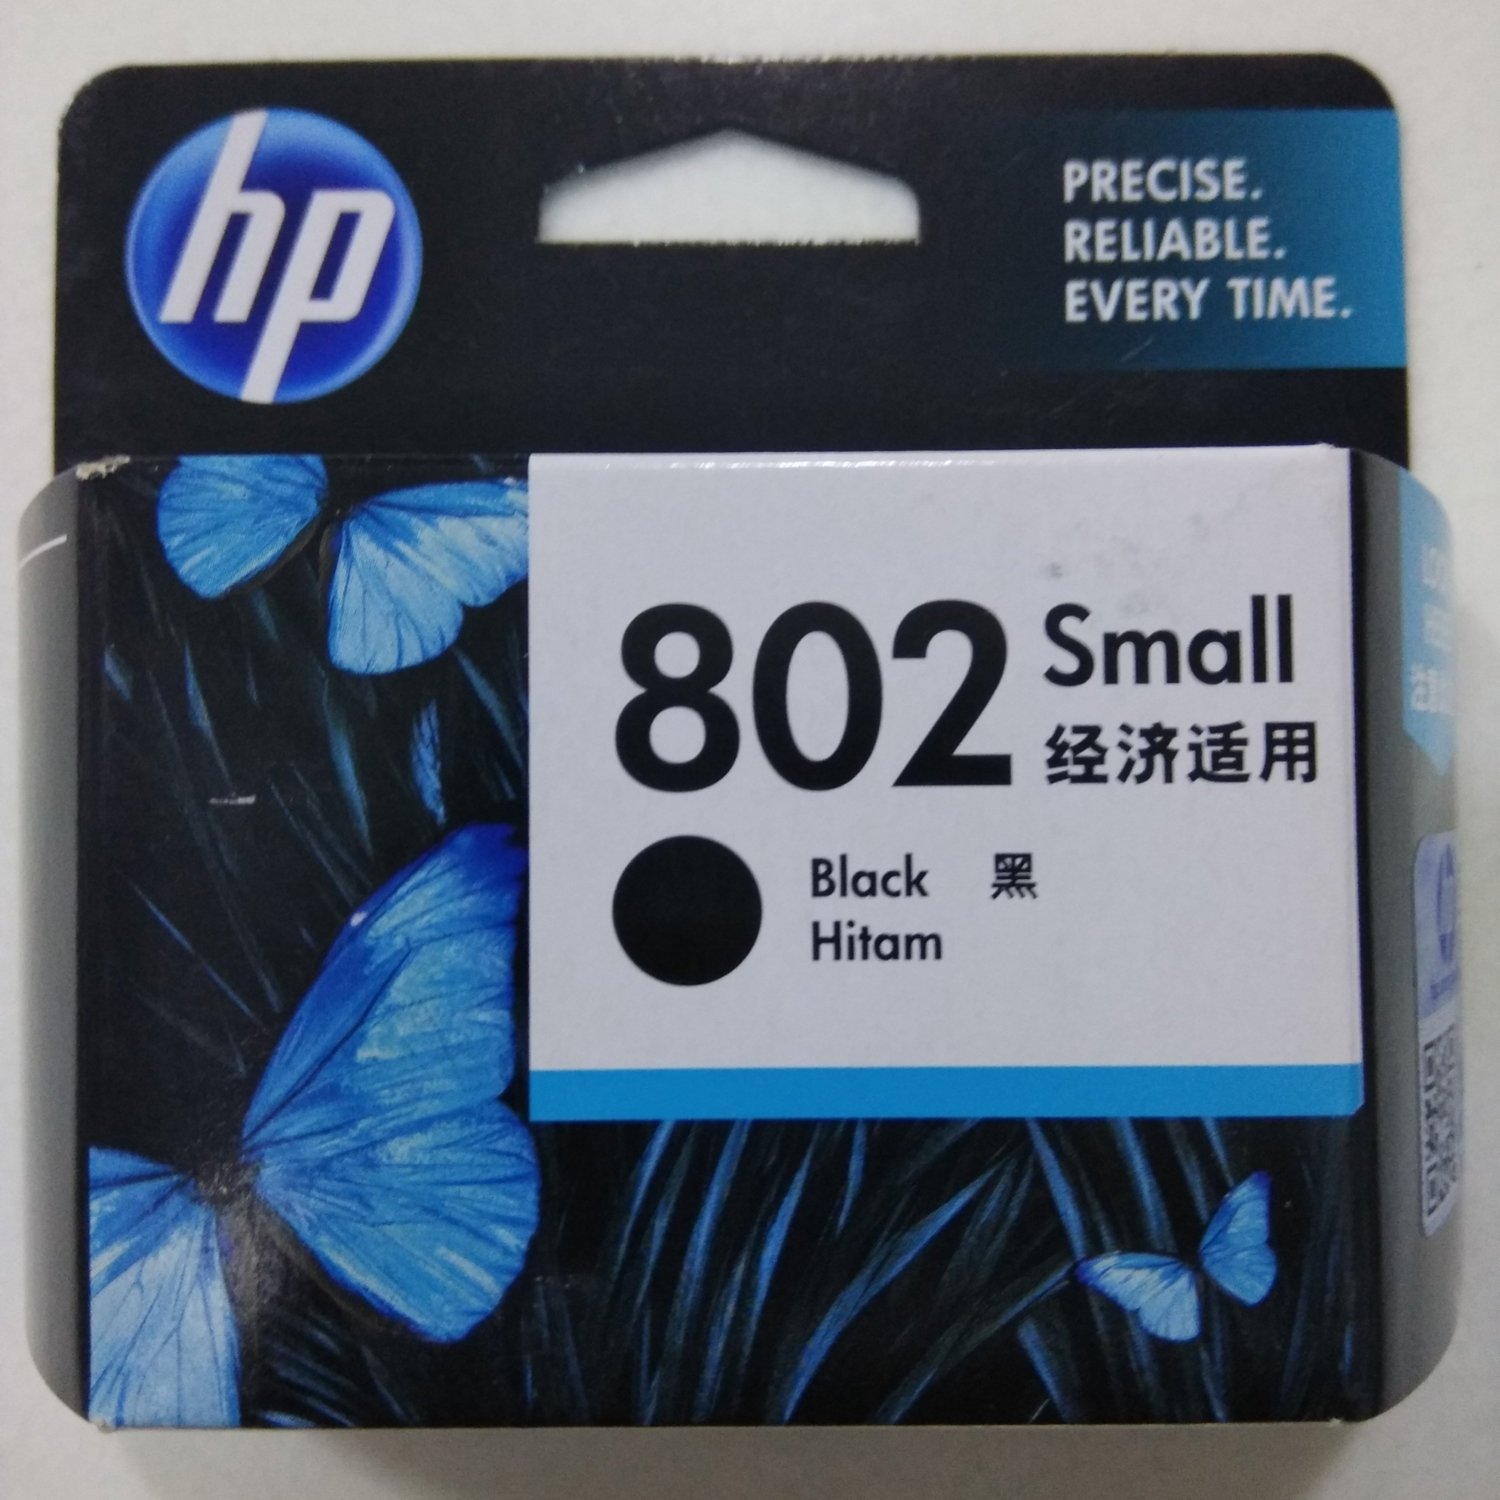 HP 802 Ink Cartridge, Black, CH561ZZ